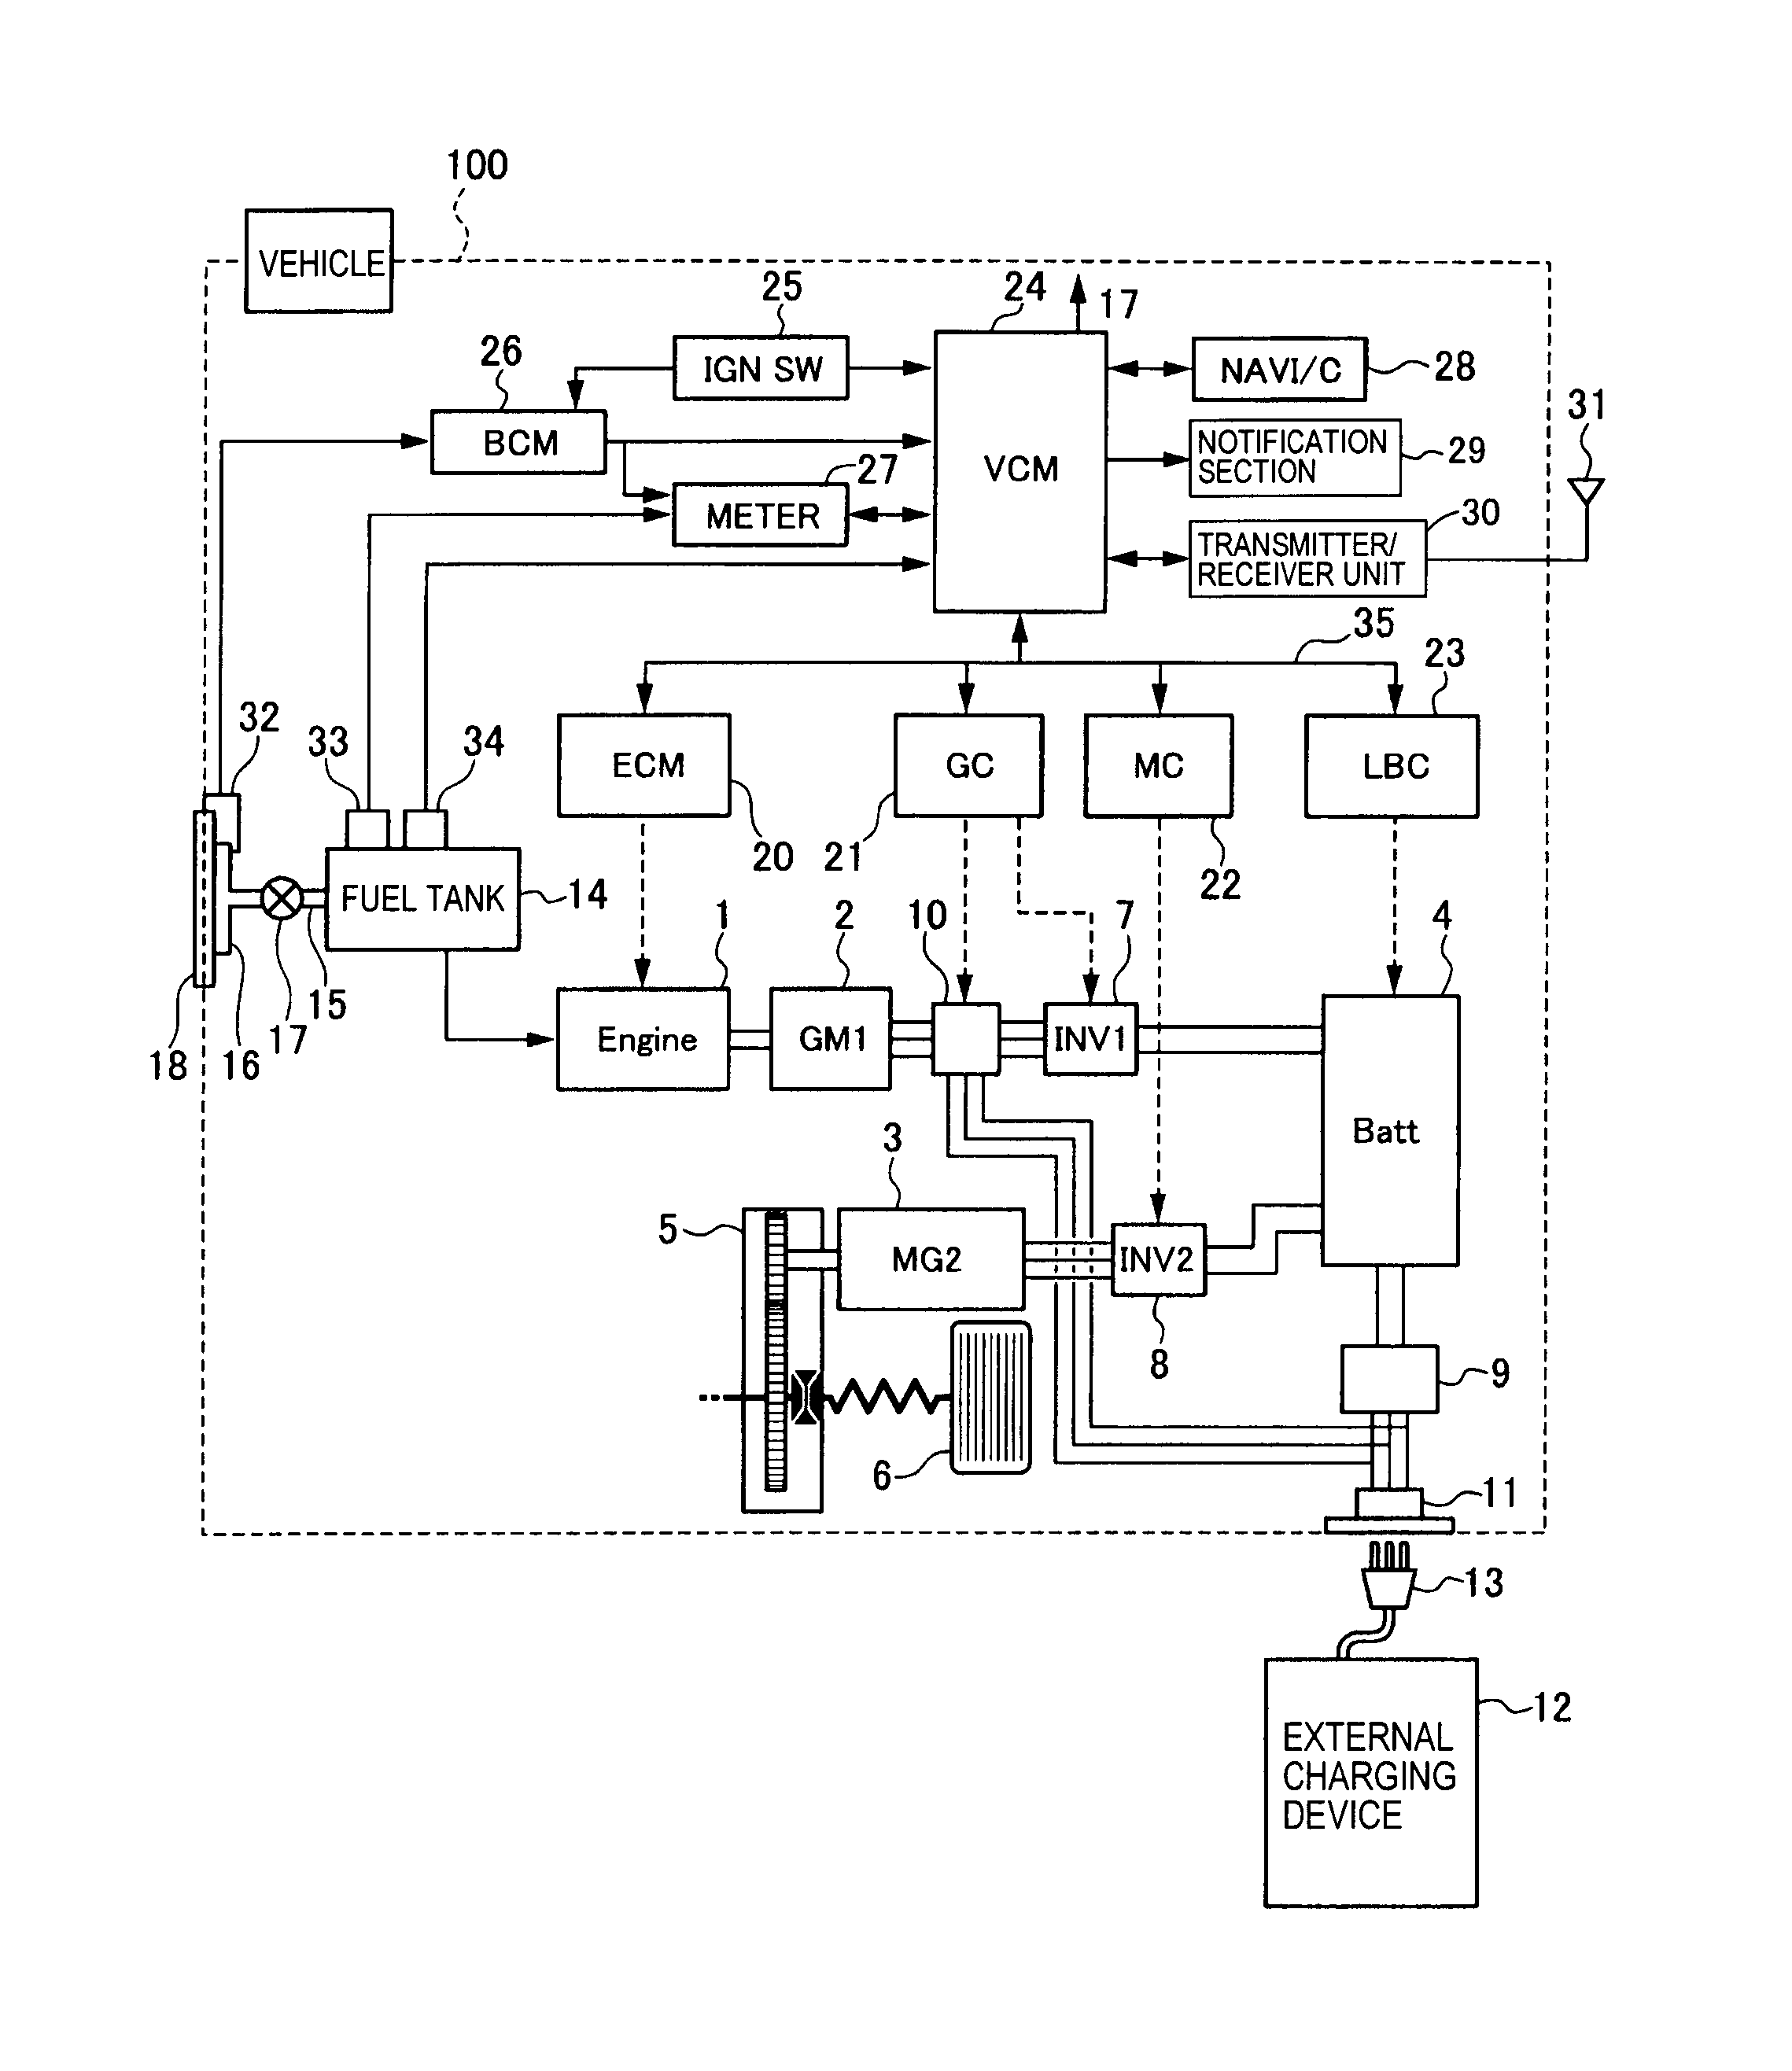 shurflo 2088-422-444 wiring diagram